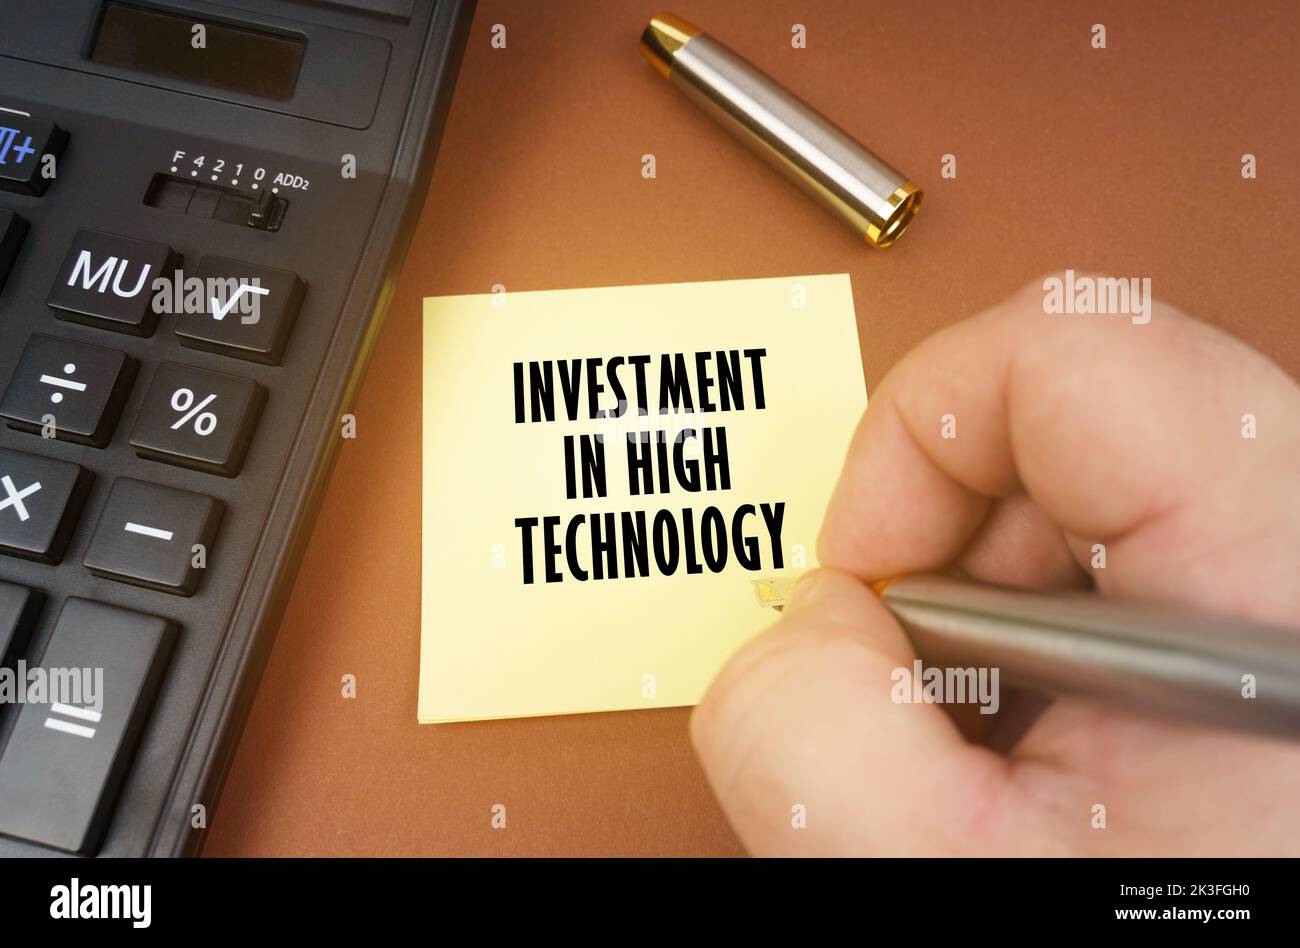 Concept d'entreprise. Une calculatrice repose sur une surface marron, une main avec un stylo fait une inscription sur un autocollant - investissement dans la haute technologie Banque D'Images